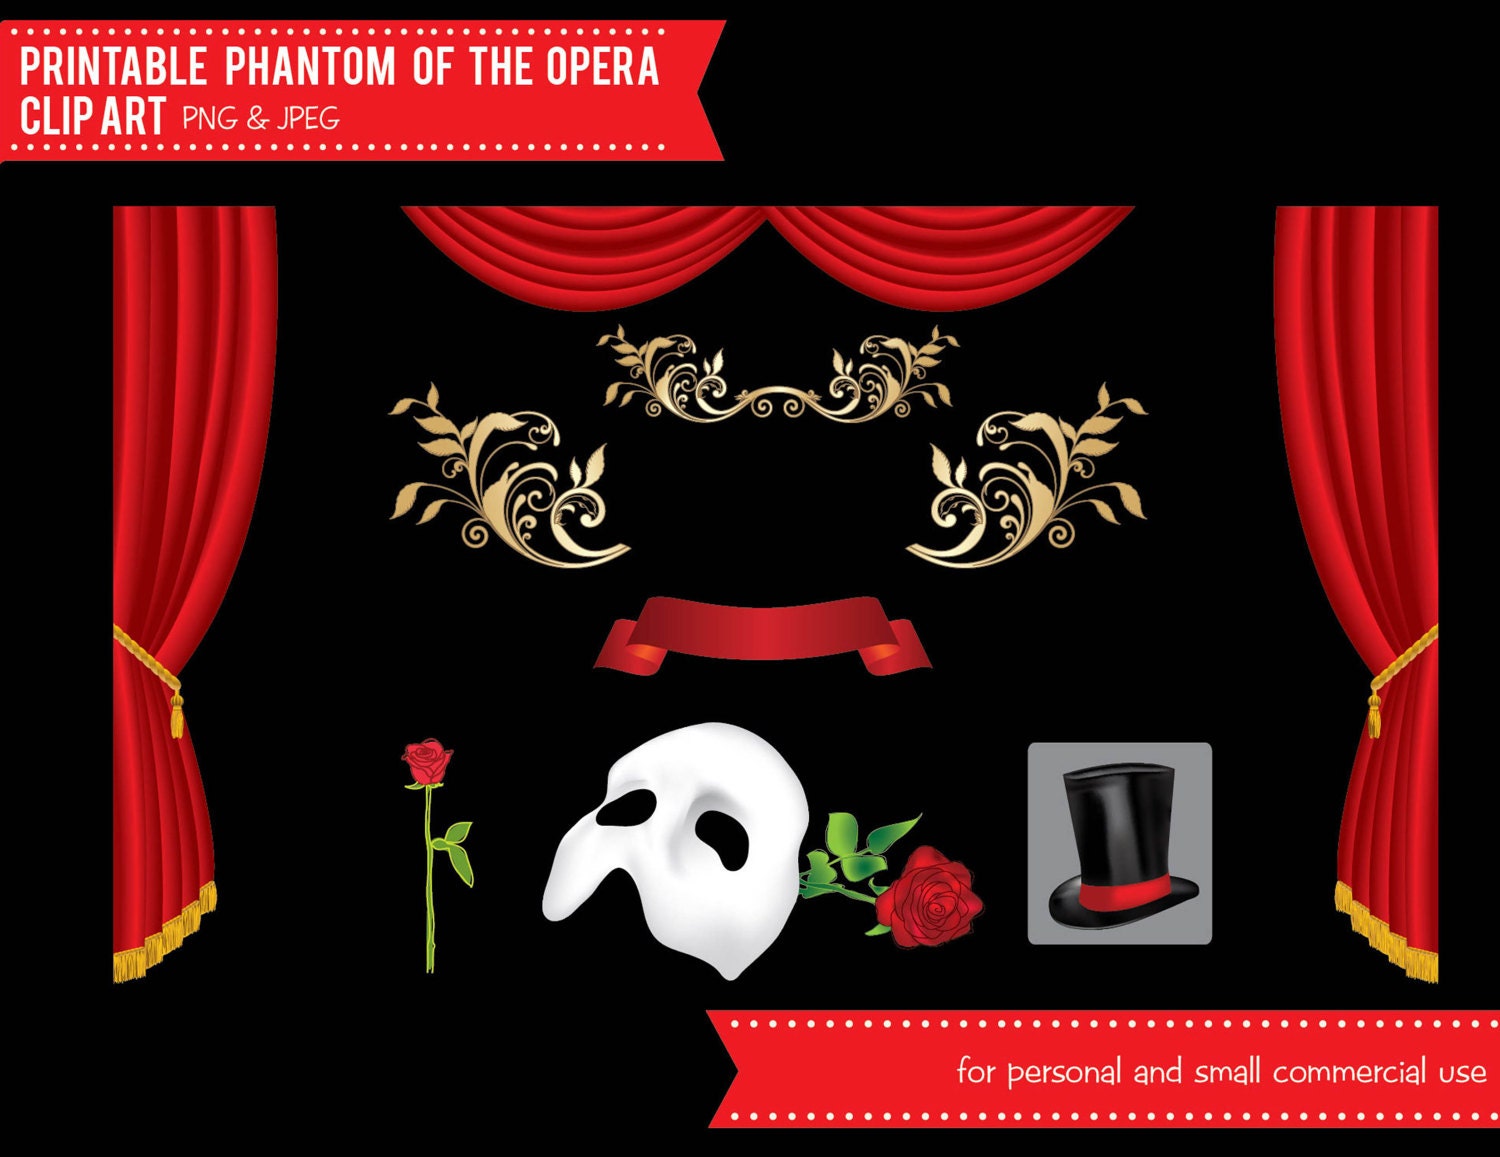 Litographs, The Phantom of the Opera